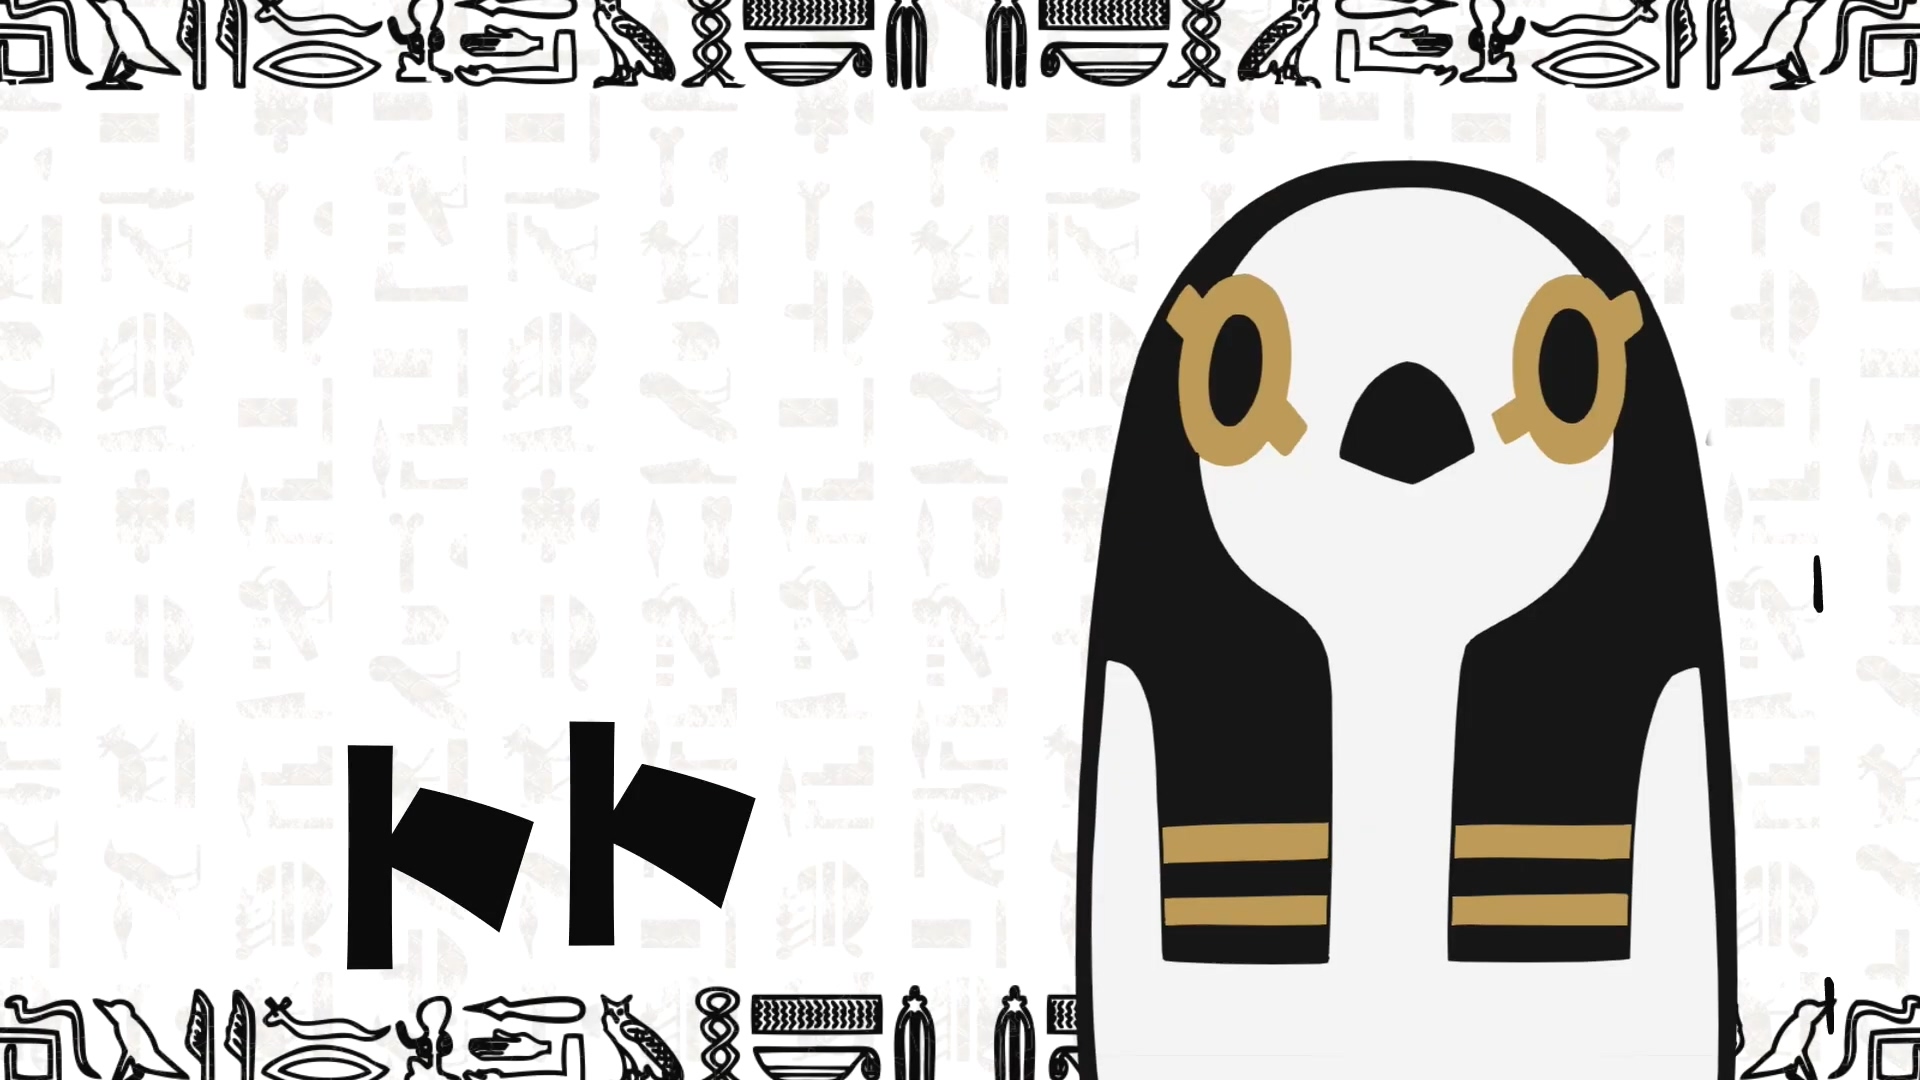 动画「埃及神明们的一样平常」PV公然 12月开播